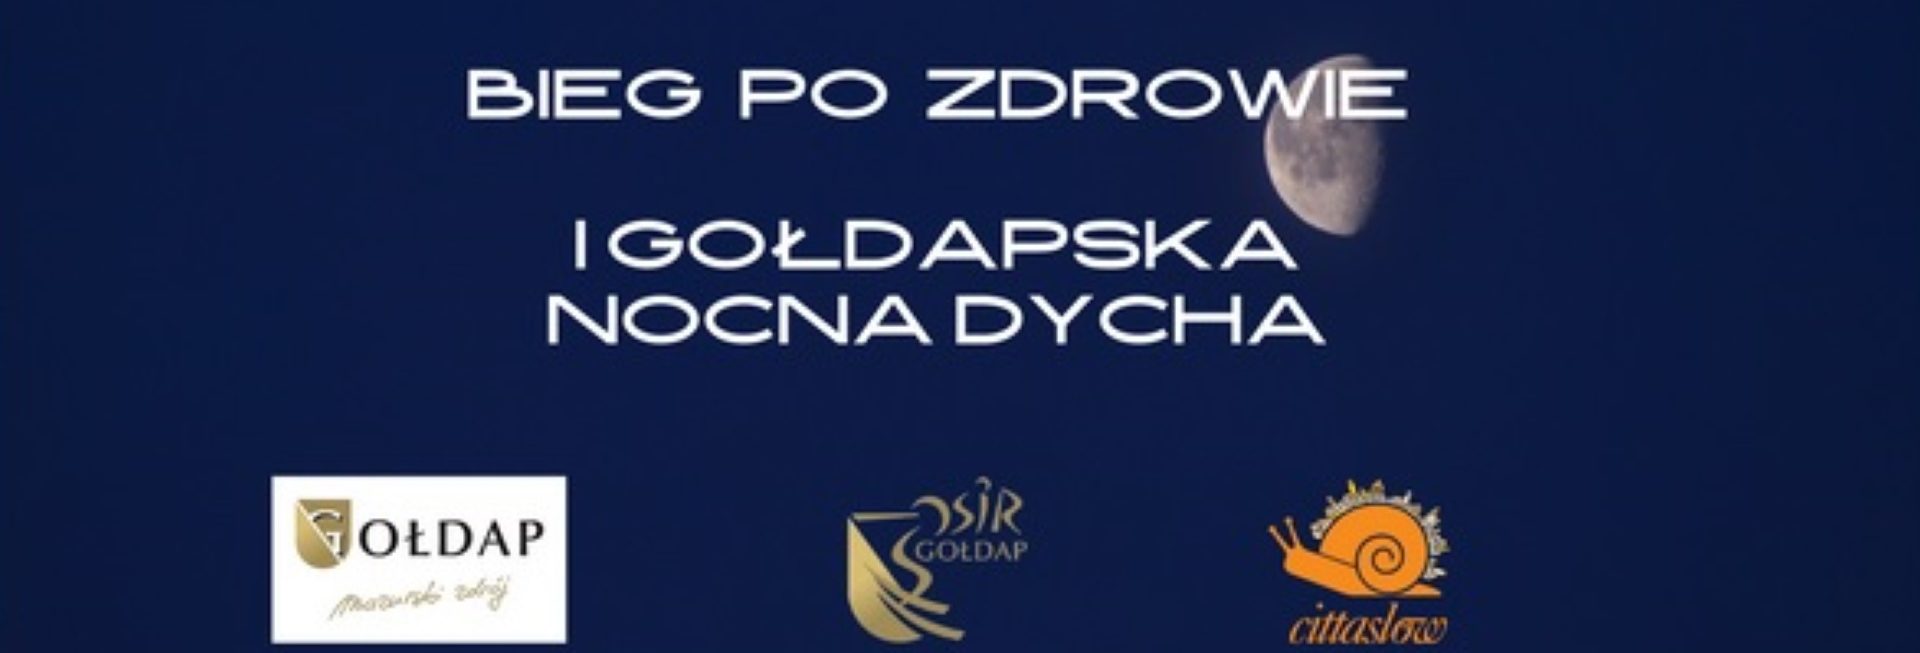 Plakat graficzny zapraszający do Gołdapi na 1. edycję Biegu Po Zdrowie – Gołdapska Nocna Dycha 2021. Na plakacie napisy i loga sponsorów i partnerów imprezy biegowej.